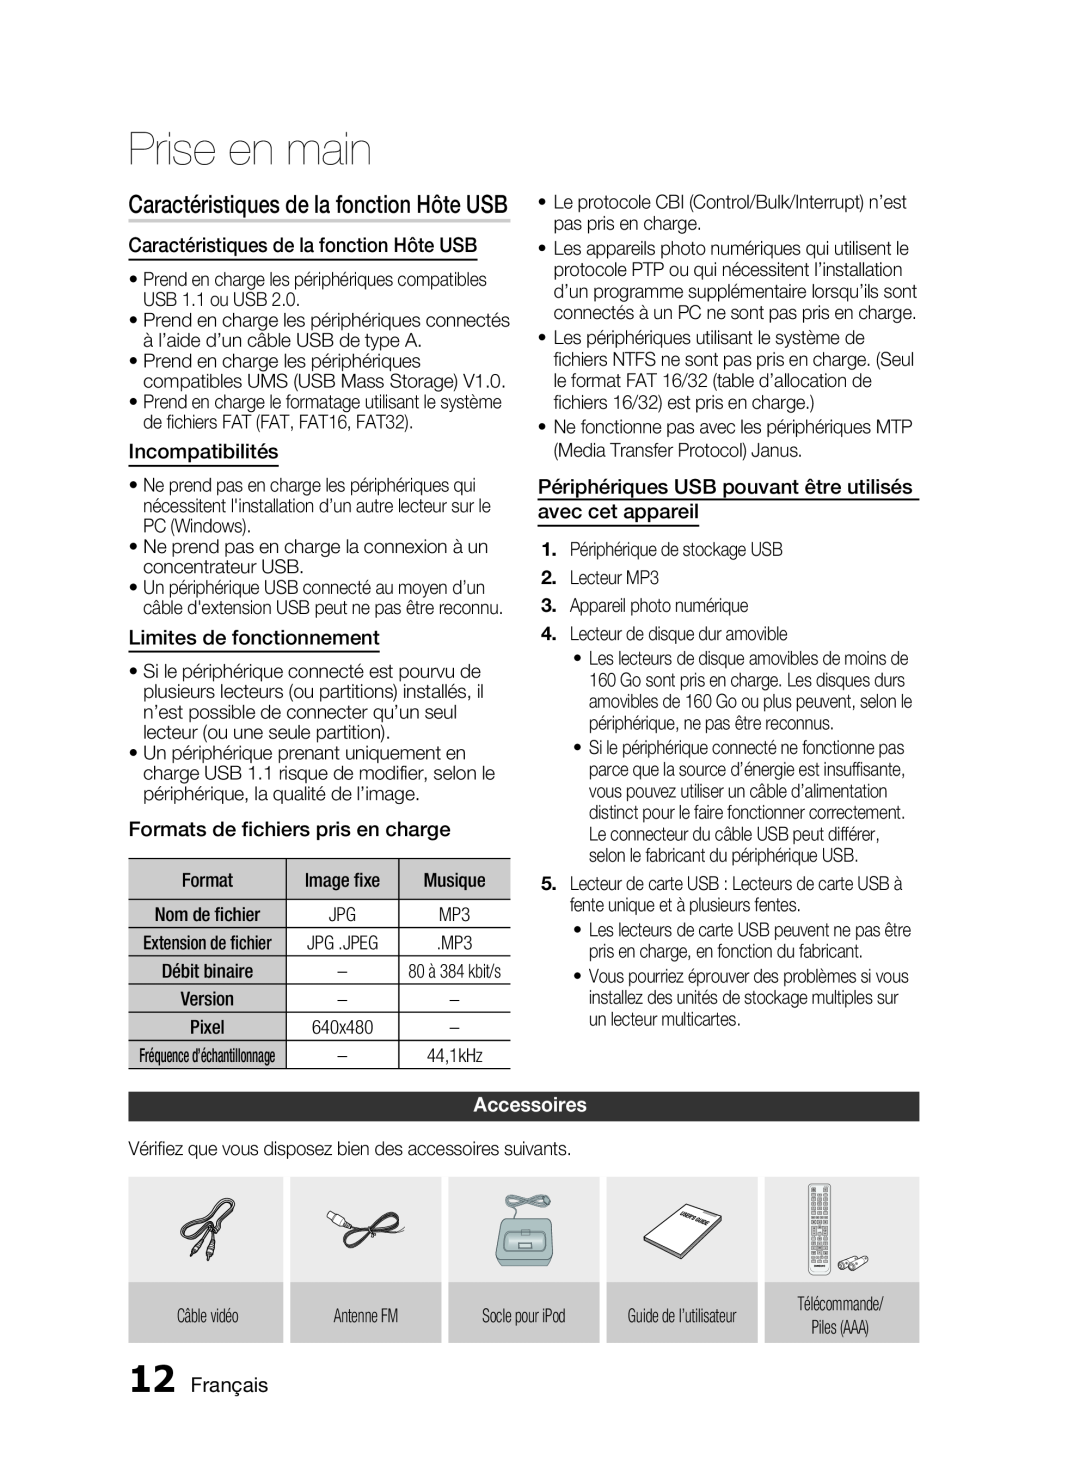 Samsung HT-C6200/XEF Caractéristiques de la fonction Hôte USB, Incompatibilités, Limites de fonctionnement, Accessoires 